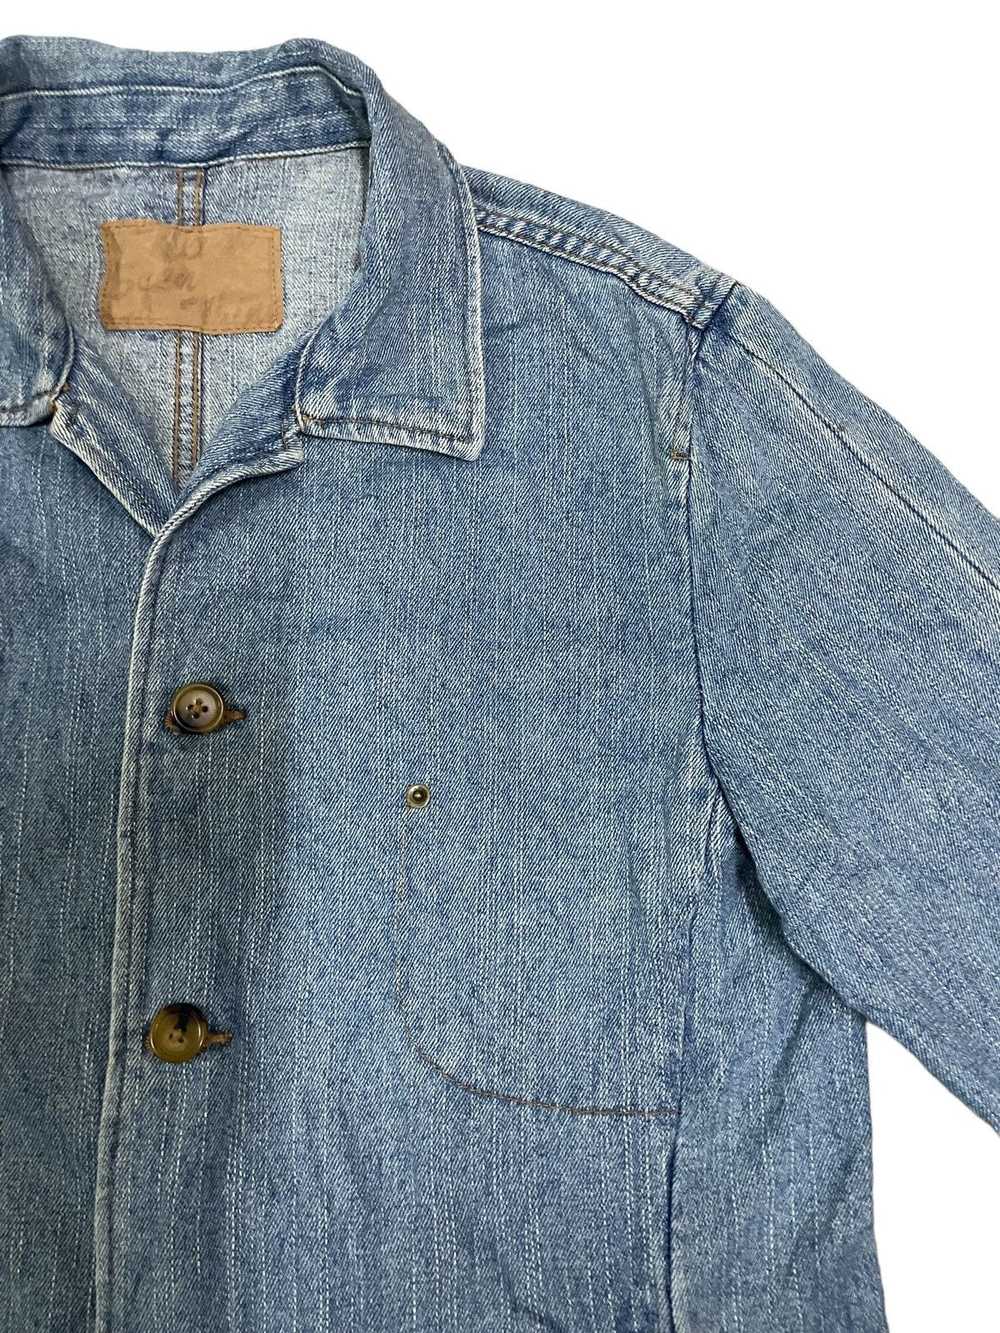 Archival Clothing × Denim Jacket × Japanese Brand… - image 8